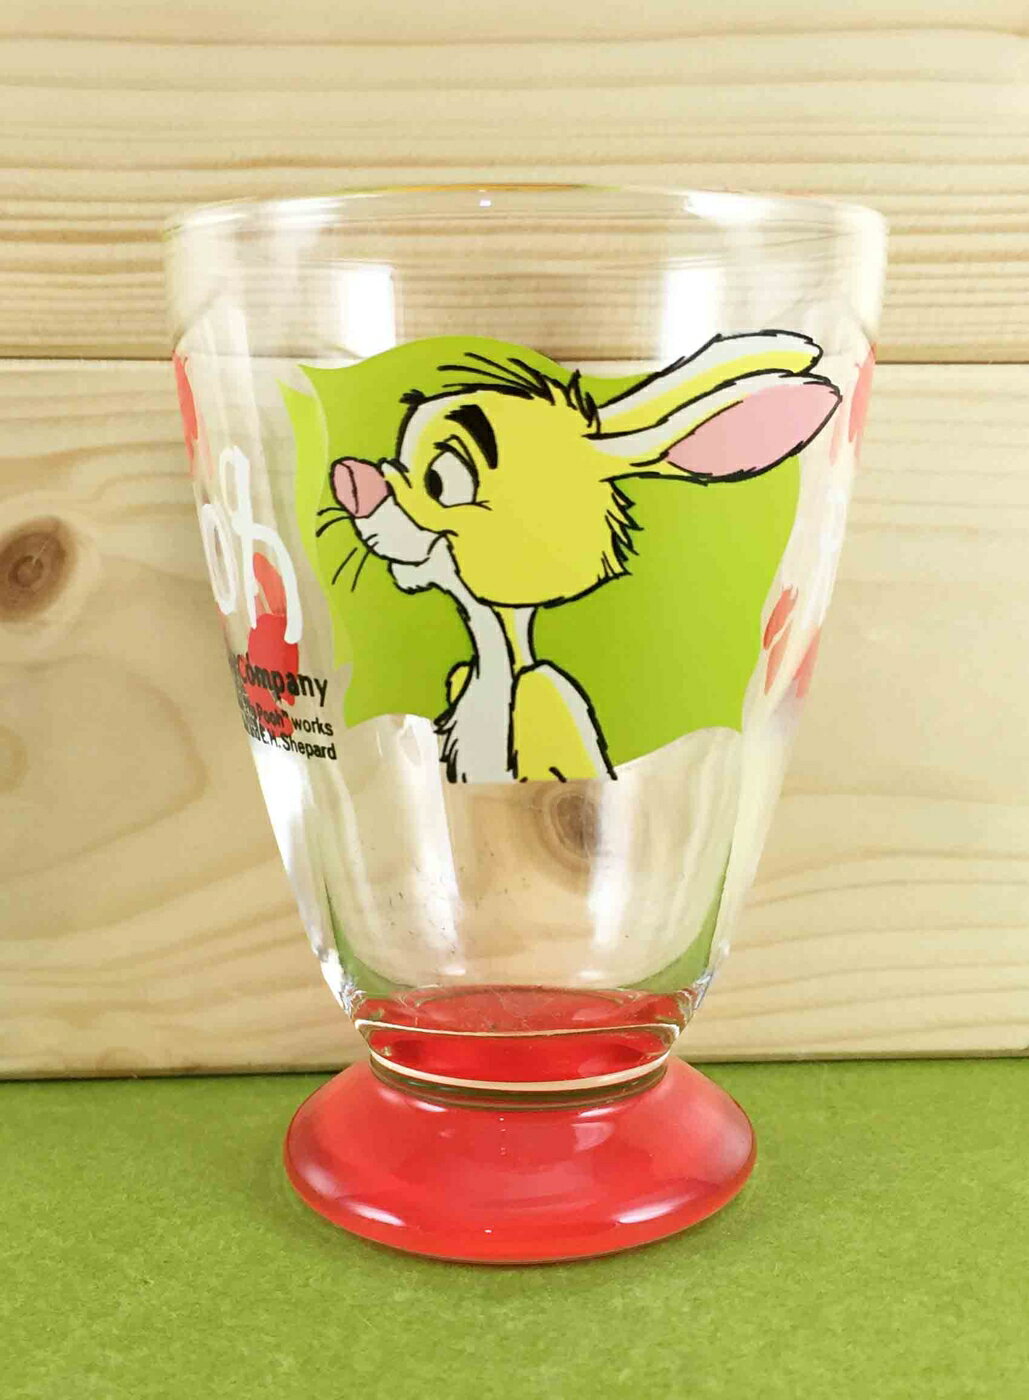 【震撼精品百貨】Winnie the Pooh 小熊維尼 玻璃杯-紅兔子 震撼日式精品百貨